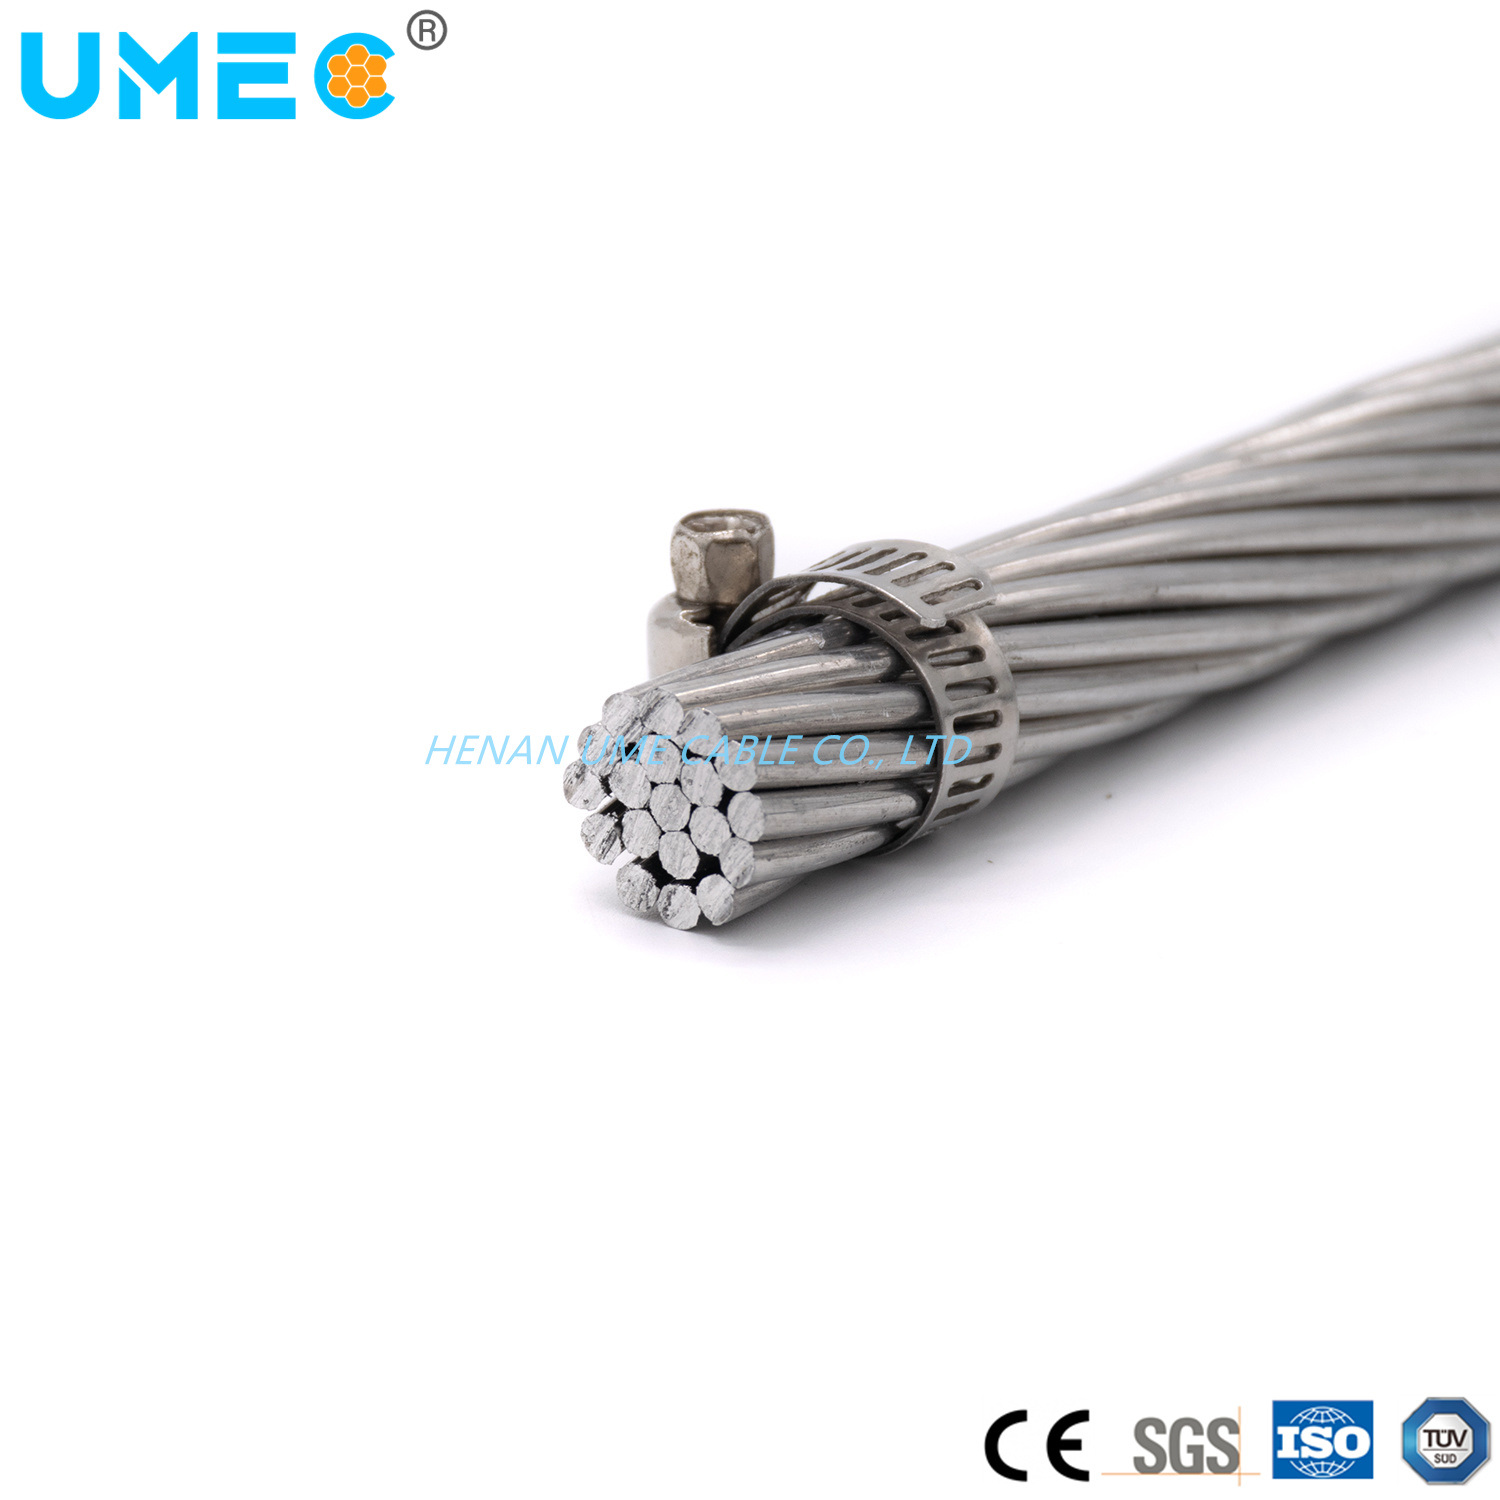 
                Conduttore elettrico di linea aerea cavi in alluminio nudo AAC cavi 2/0 3/0 4/0 cavo elettrico nudo in alluminio
            